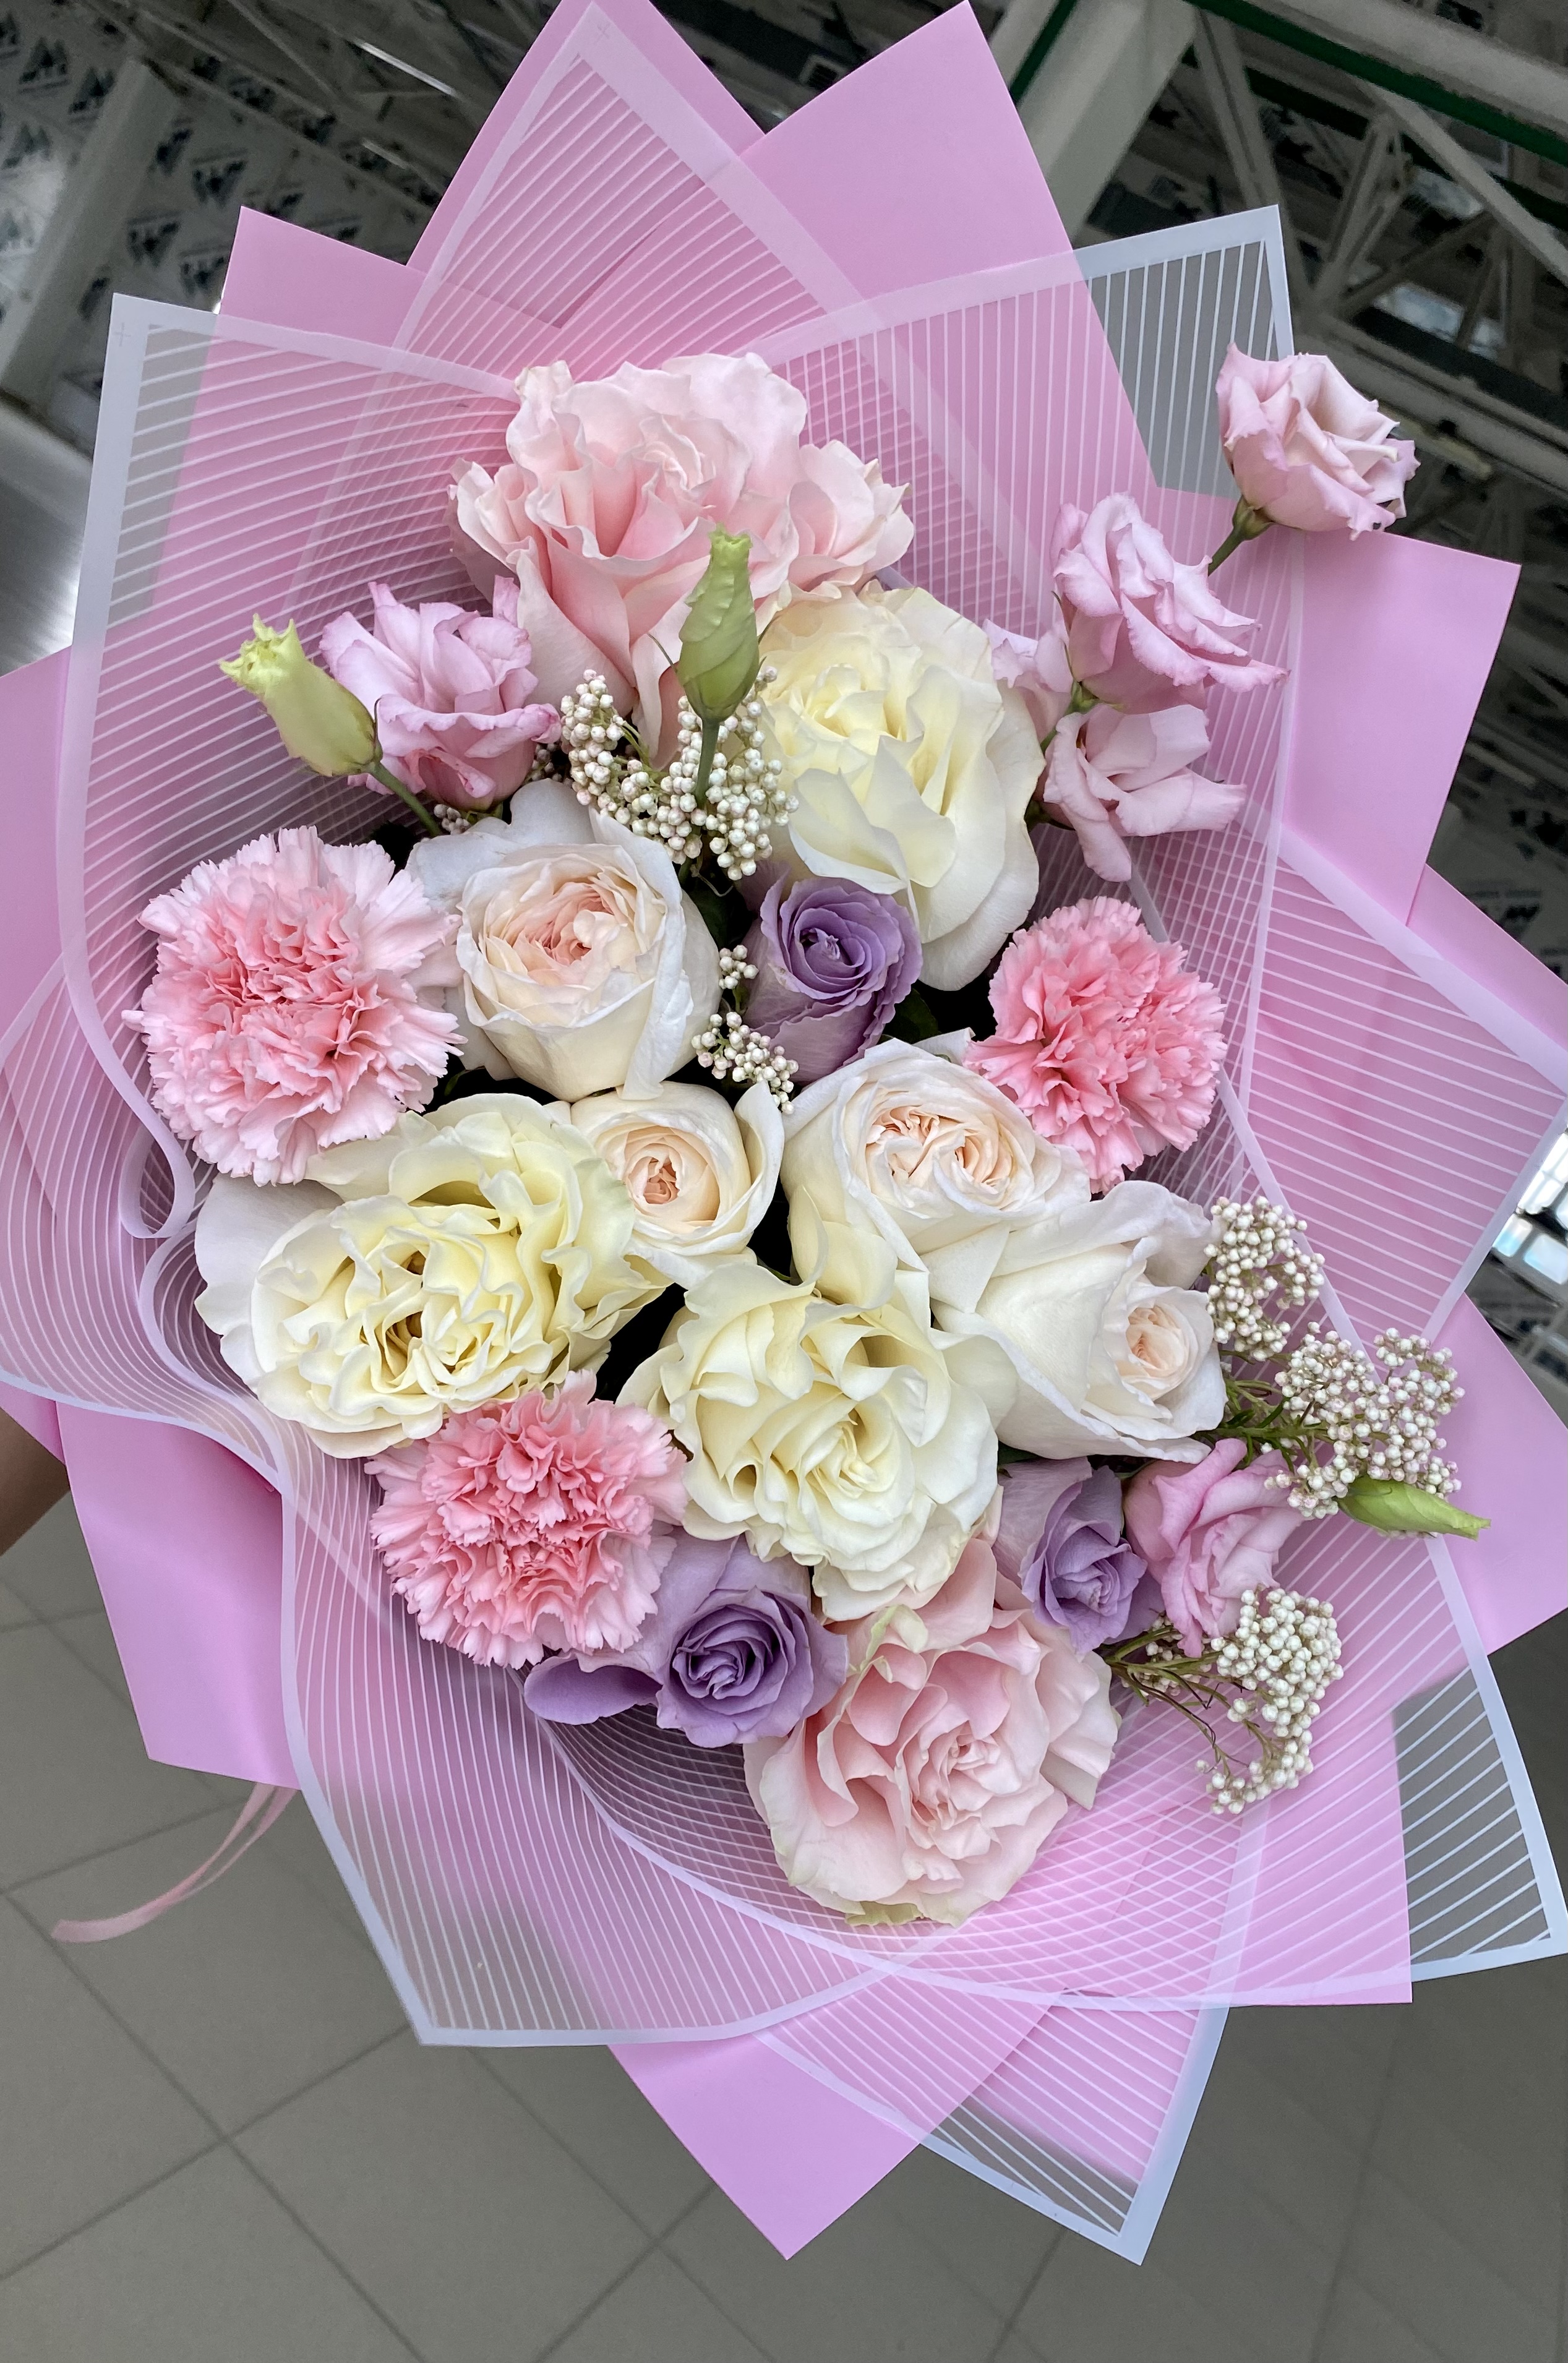 Bouquet of Spring flowers delivered to Uralsk